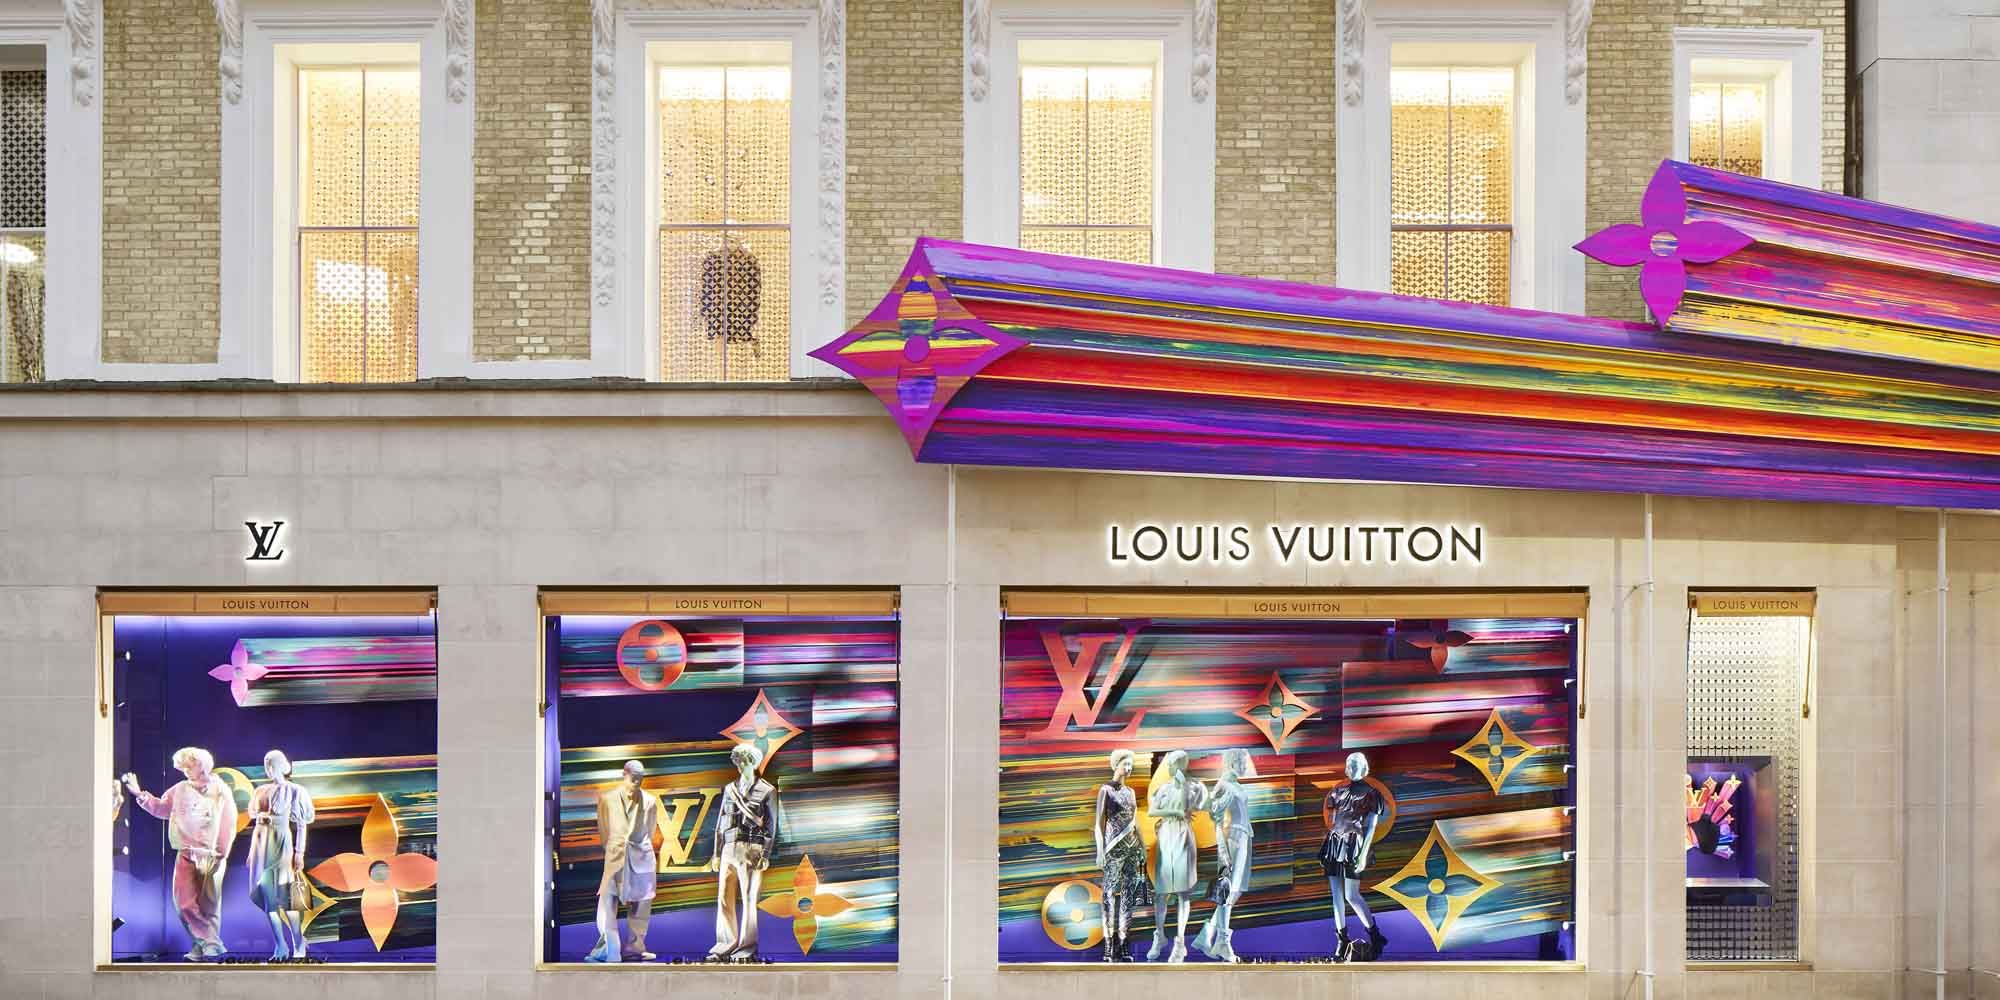 Dynamiek vacuüm spijsvertering Deze nieuwe Louis Vuitton-winkel in Londen wil je zien